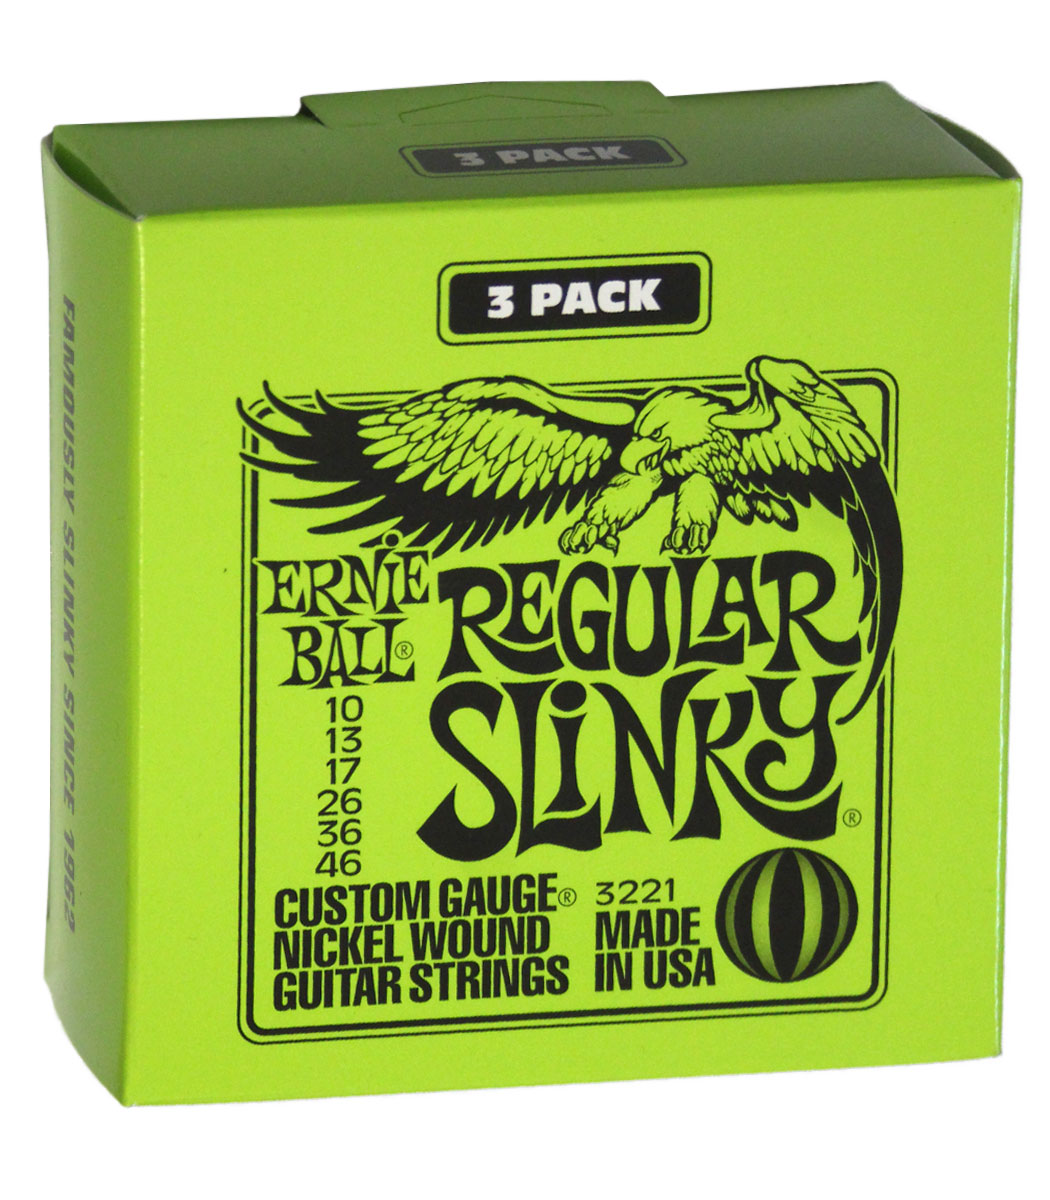 Ernie Ball Regular Slinky Nickel Wound Electric Guitar Strings 3 Pack -  10-46 Gauge